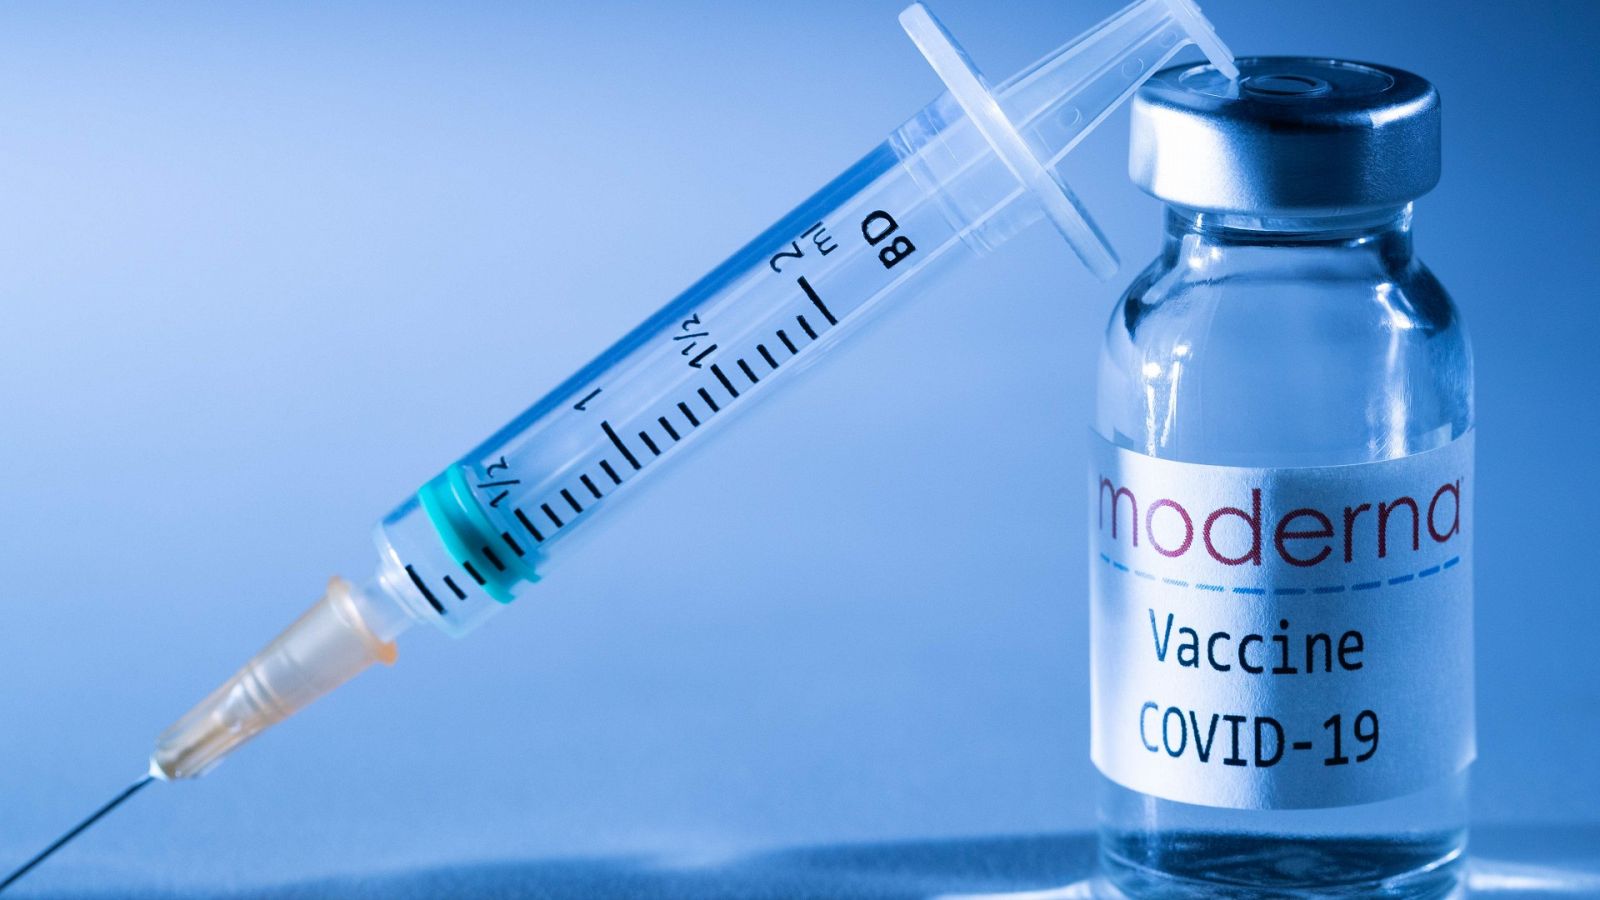 Comparamos las vacunas de Moderna y Pfizer con expertos - RTVE.es